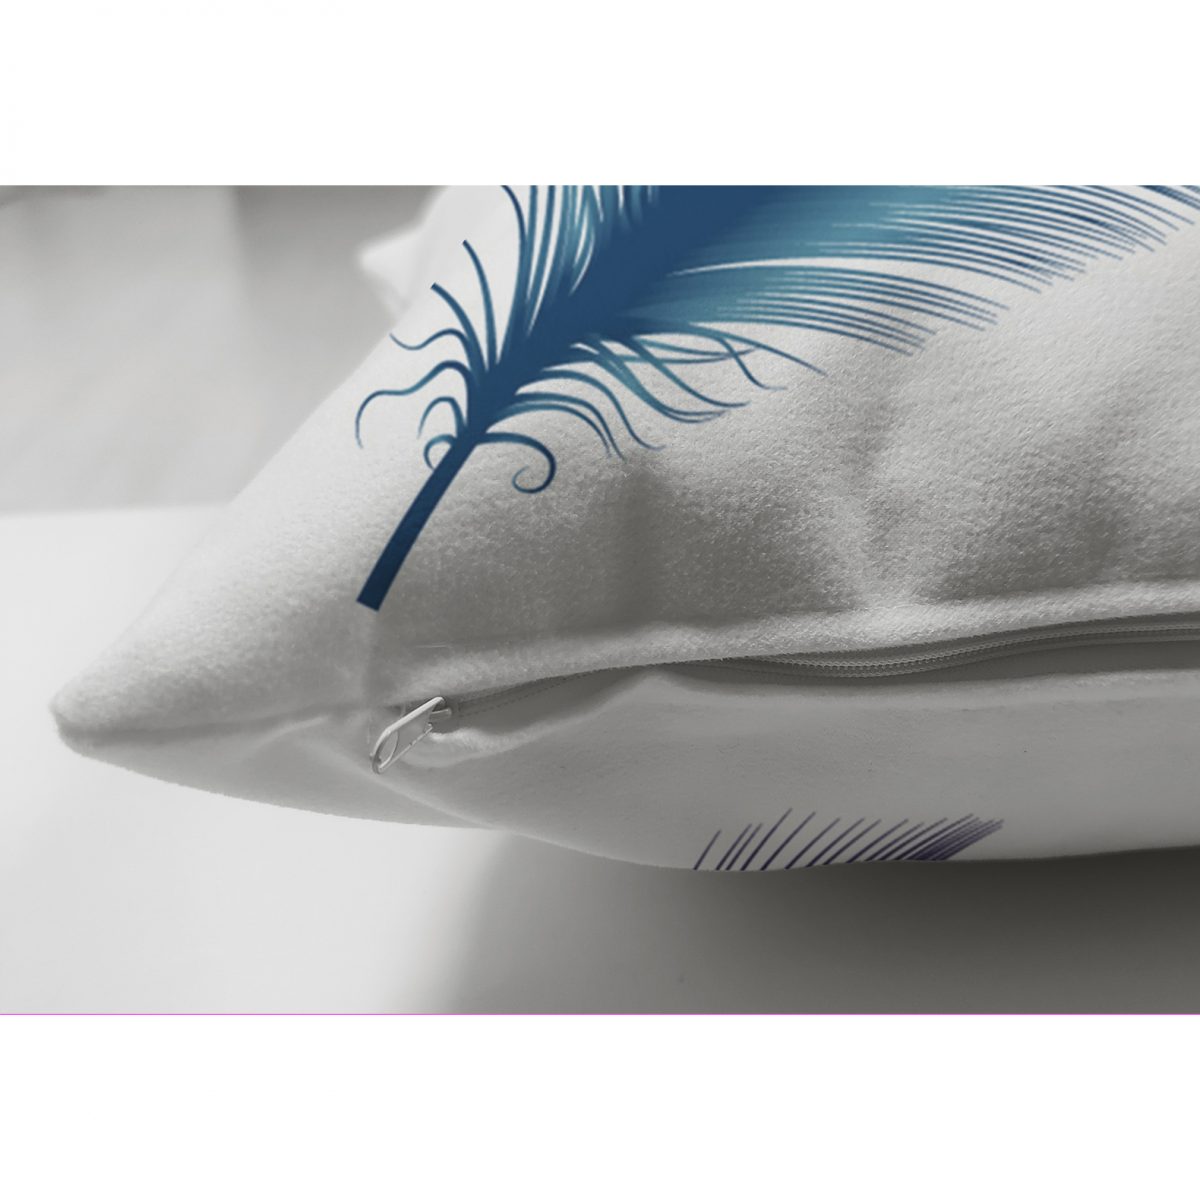 Çift Taraflı Kuş Tüyü Resimli Dijital Baskılı Dekoratif Süet Yastık Kırlent Kılıfı Realhomes